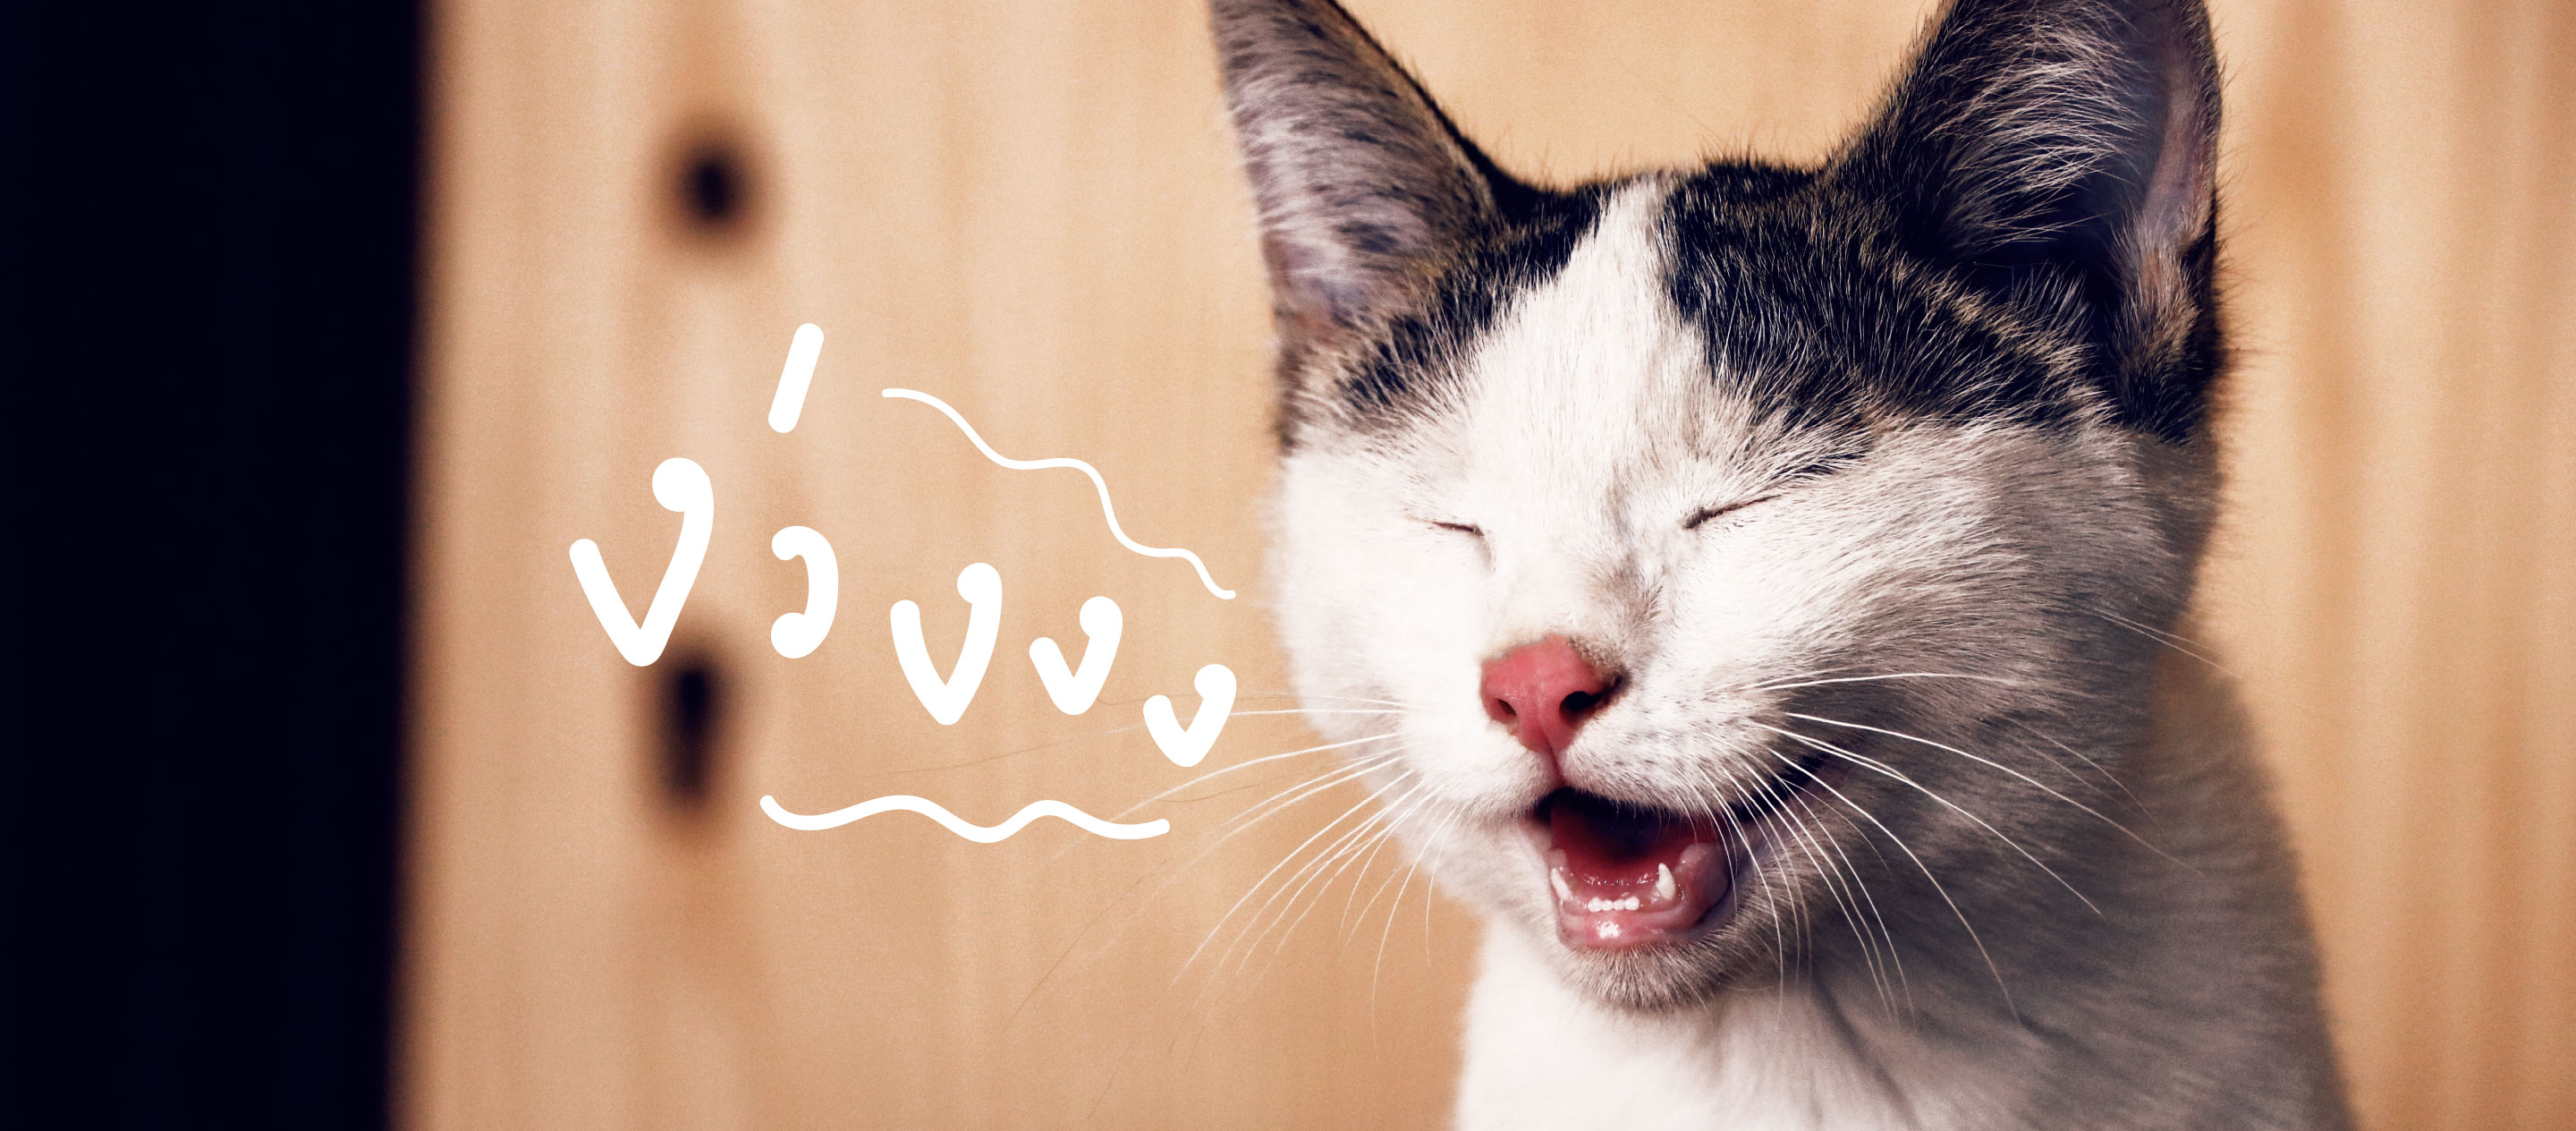 Meowtalk แอพพลิเคชั่นแปลภาษาแมวที่จะทำให้มนุษย์กับเจ้าเหมียวเข้าใจกันมากขึ้น  – A Day Magazine